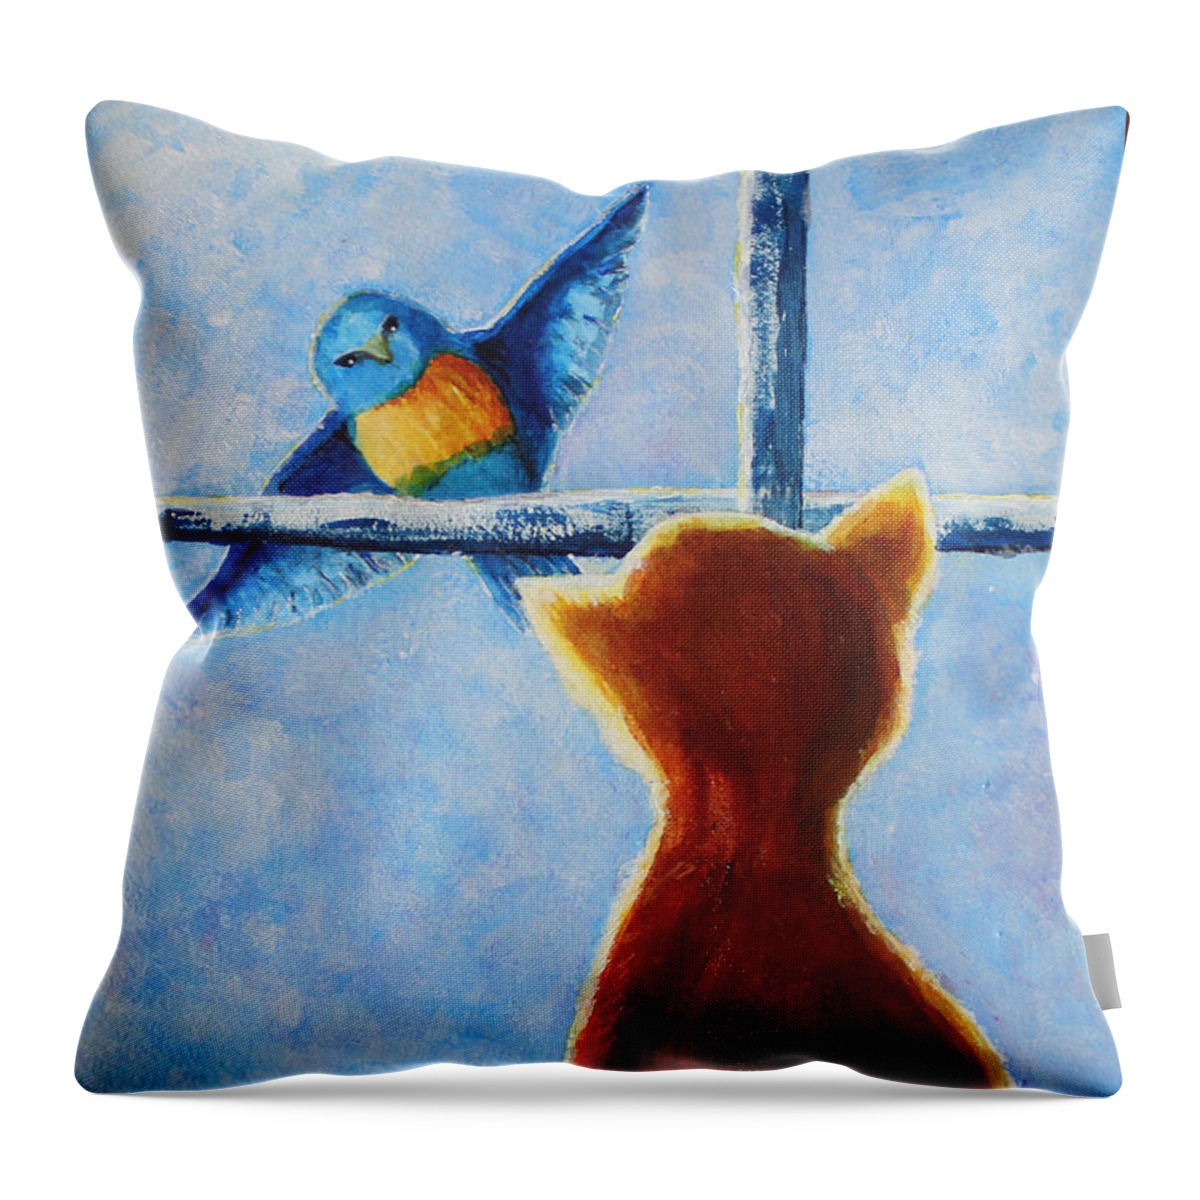 Bird Throw Pillow featuring the painting Teasing Bird by April Burton